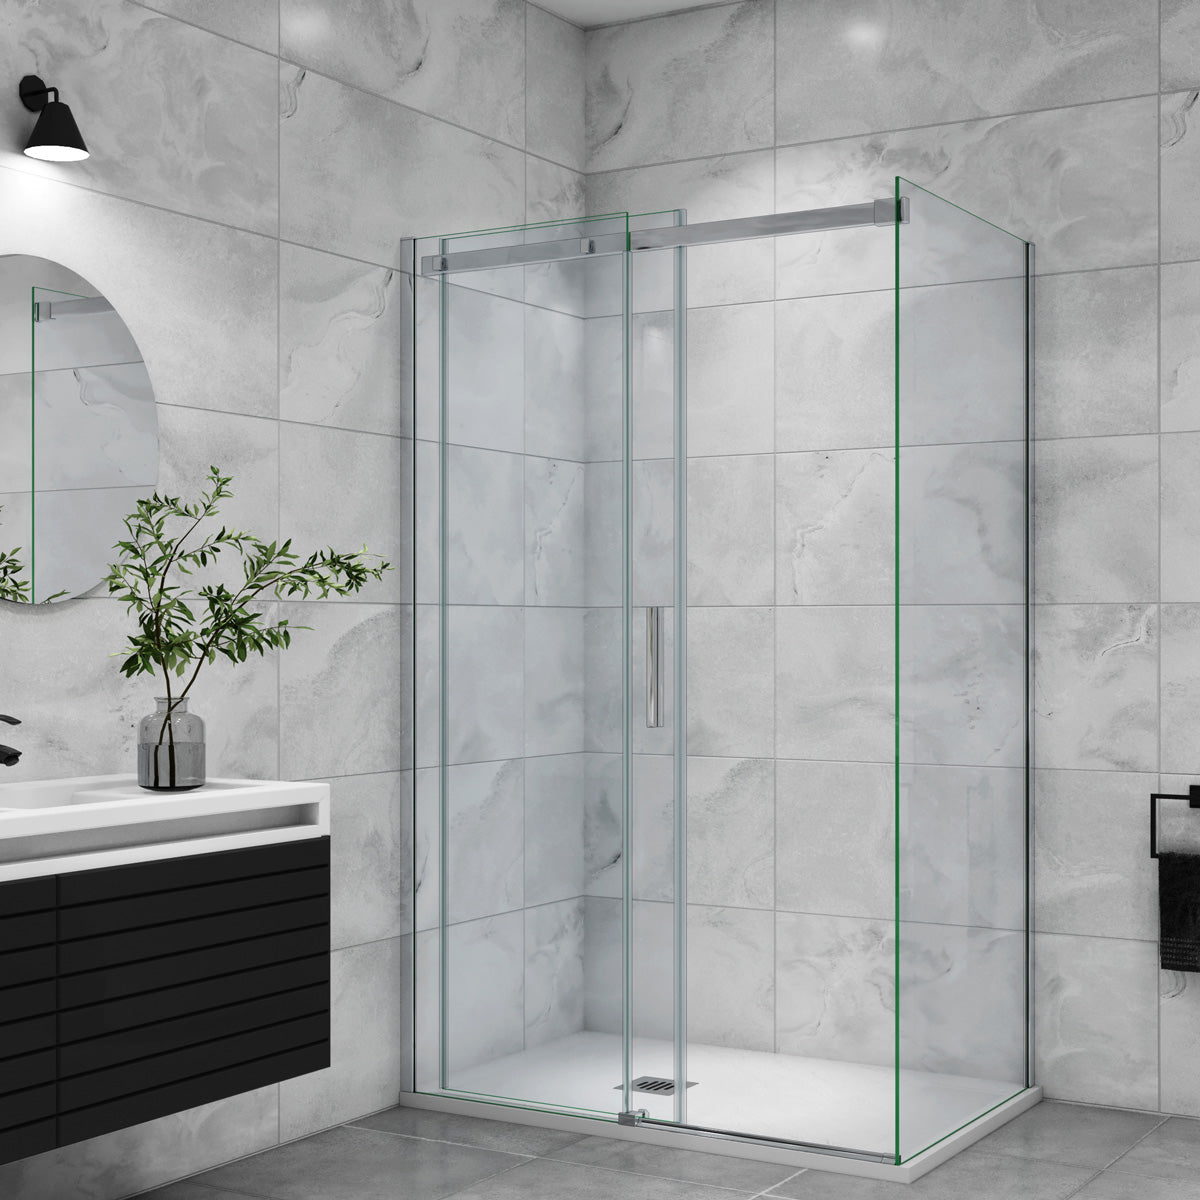 Duschtür+Seitenwand Schiebetür 100x100 cm Glasstärke 6mm Dusche Duschabtrennung Duschkabine